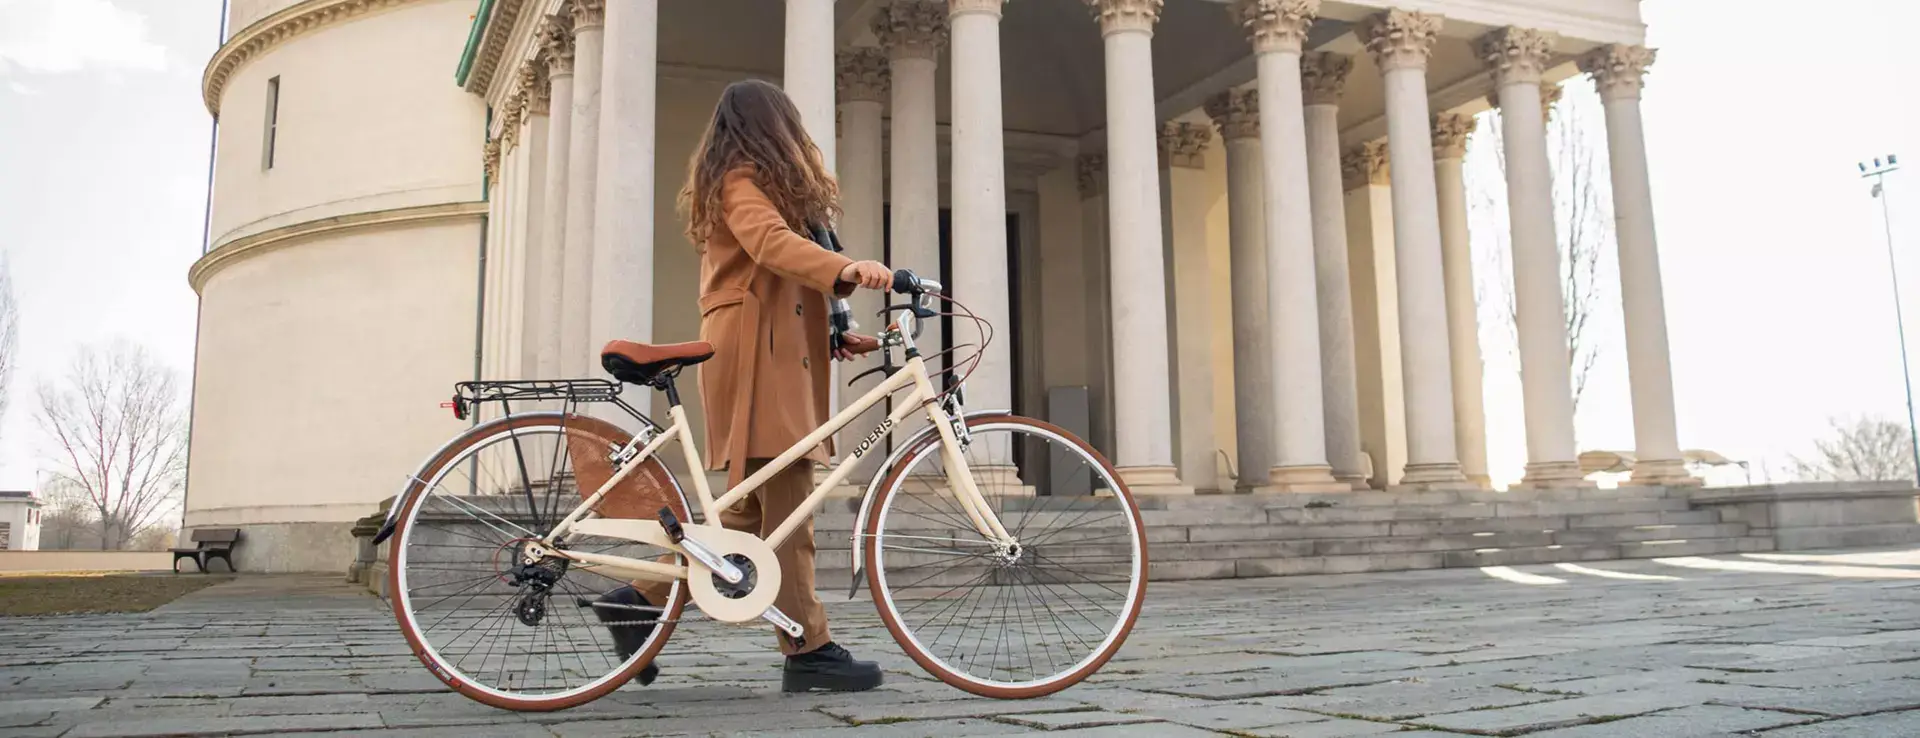 ragazza che porta a mano una City Bike Retò Boeris Bikes Torino davanti al Mausoleo della belal rosina Mirafiori